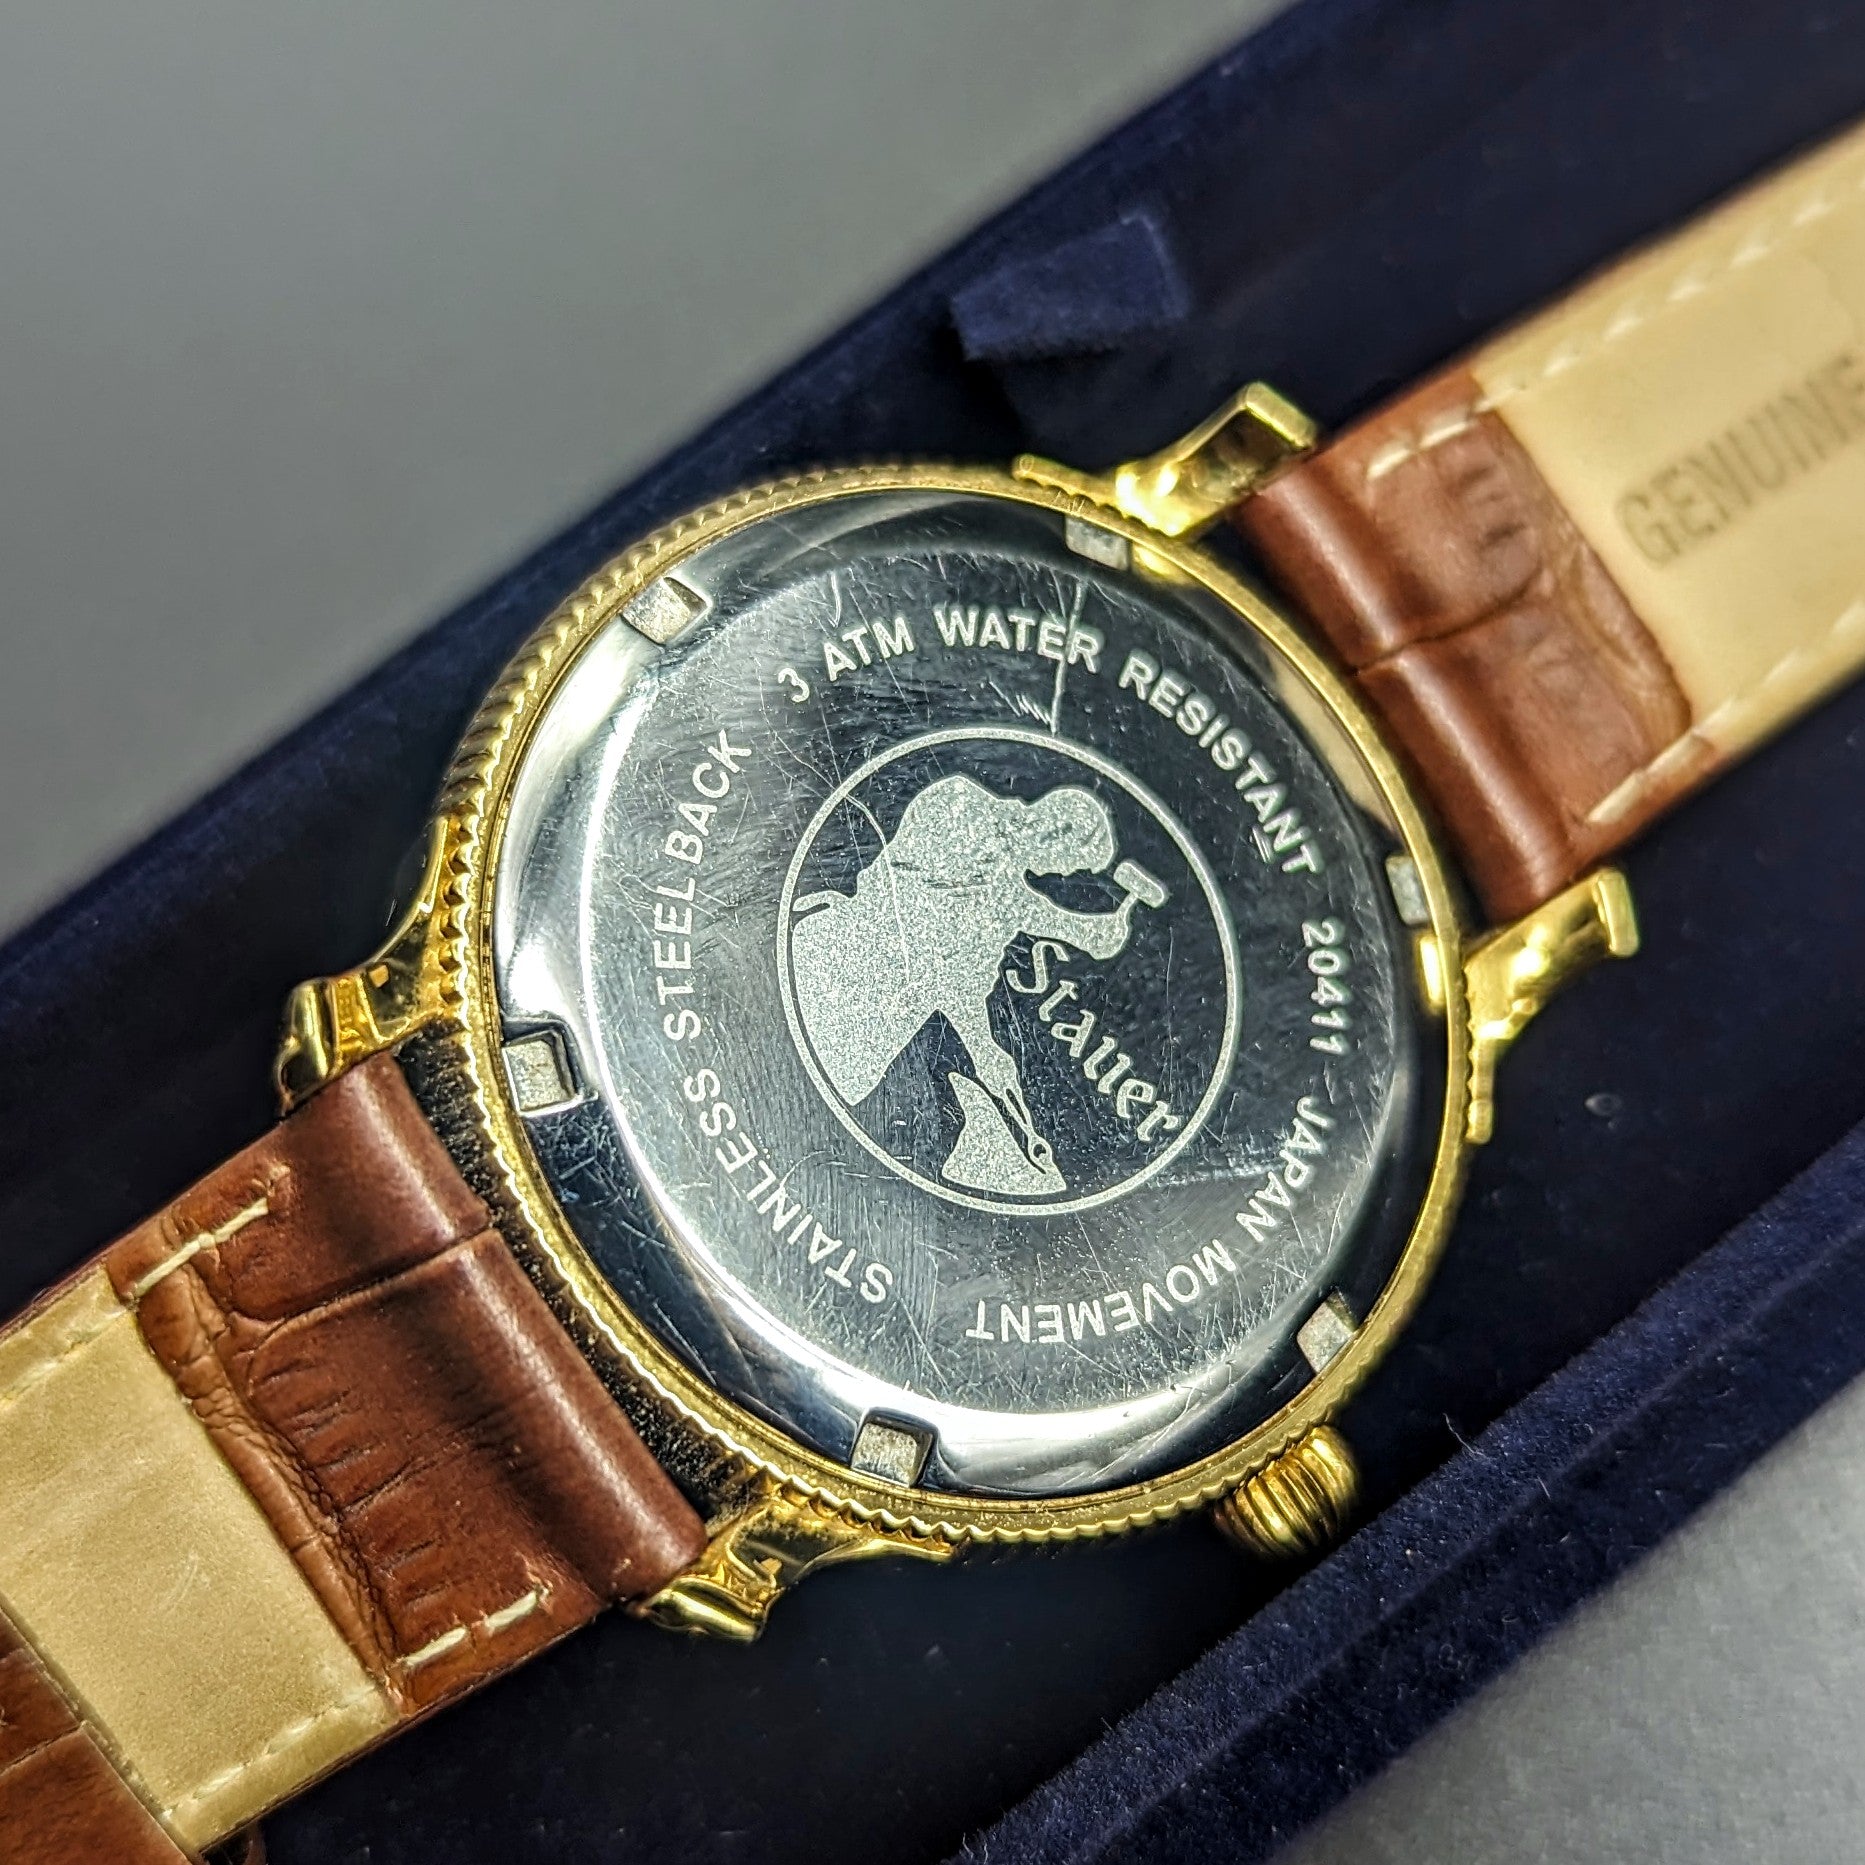 STAUER Quartz Watch Ref. 20411 Art Deco Style Wristwatch – In BOX!